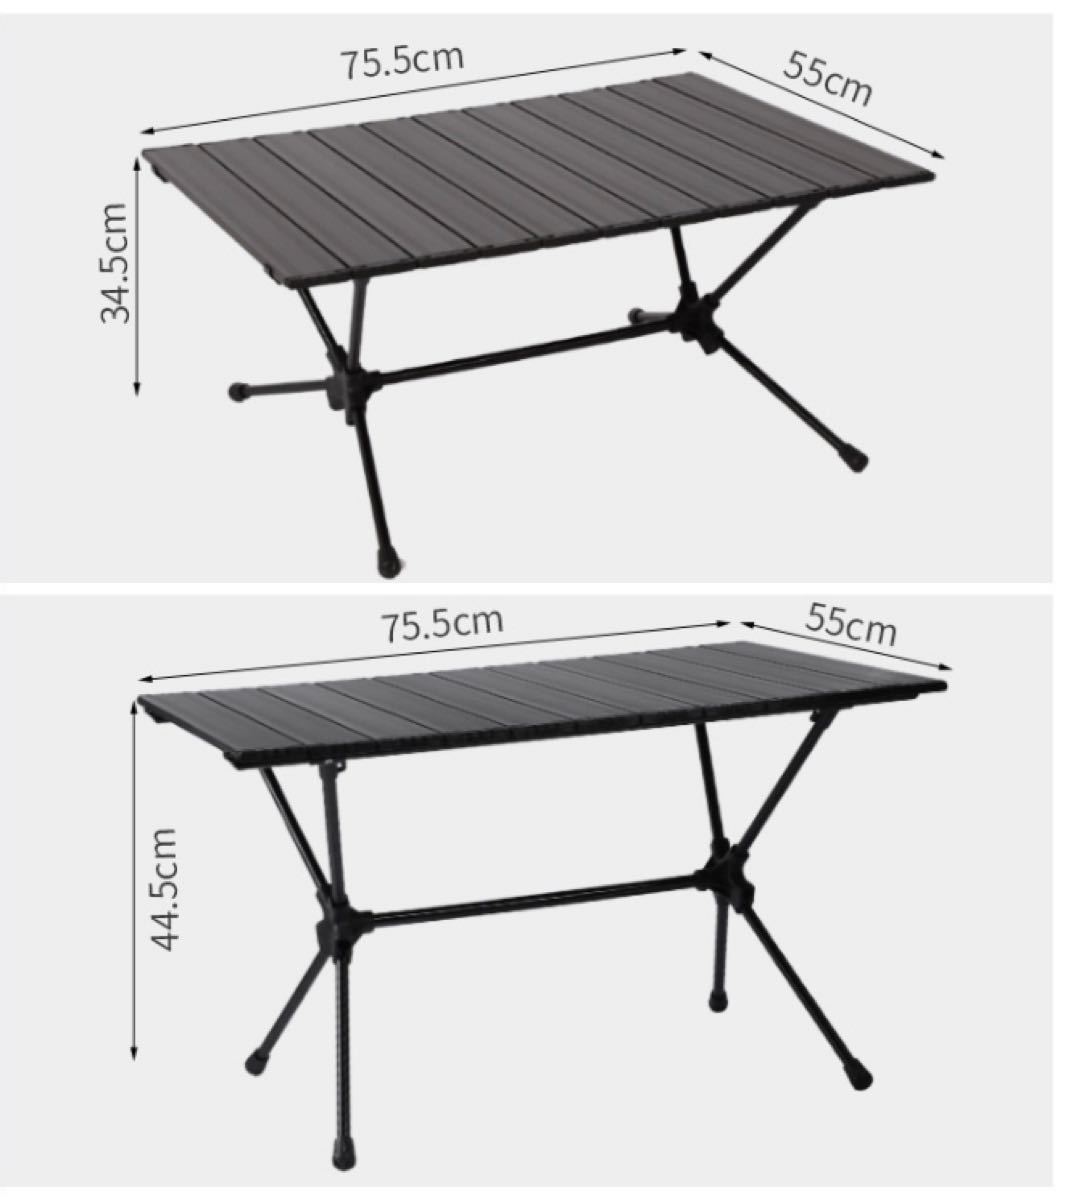 アウトドアテーブル 折りたたみ ロールテーブル アルミ製 テーブルセット ロールトップテーブル キャンプテーブル